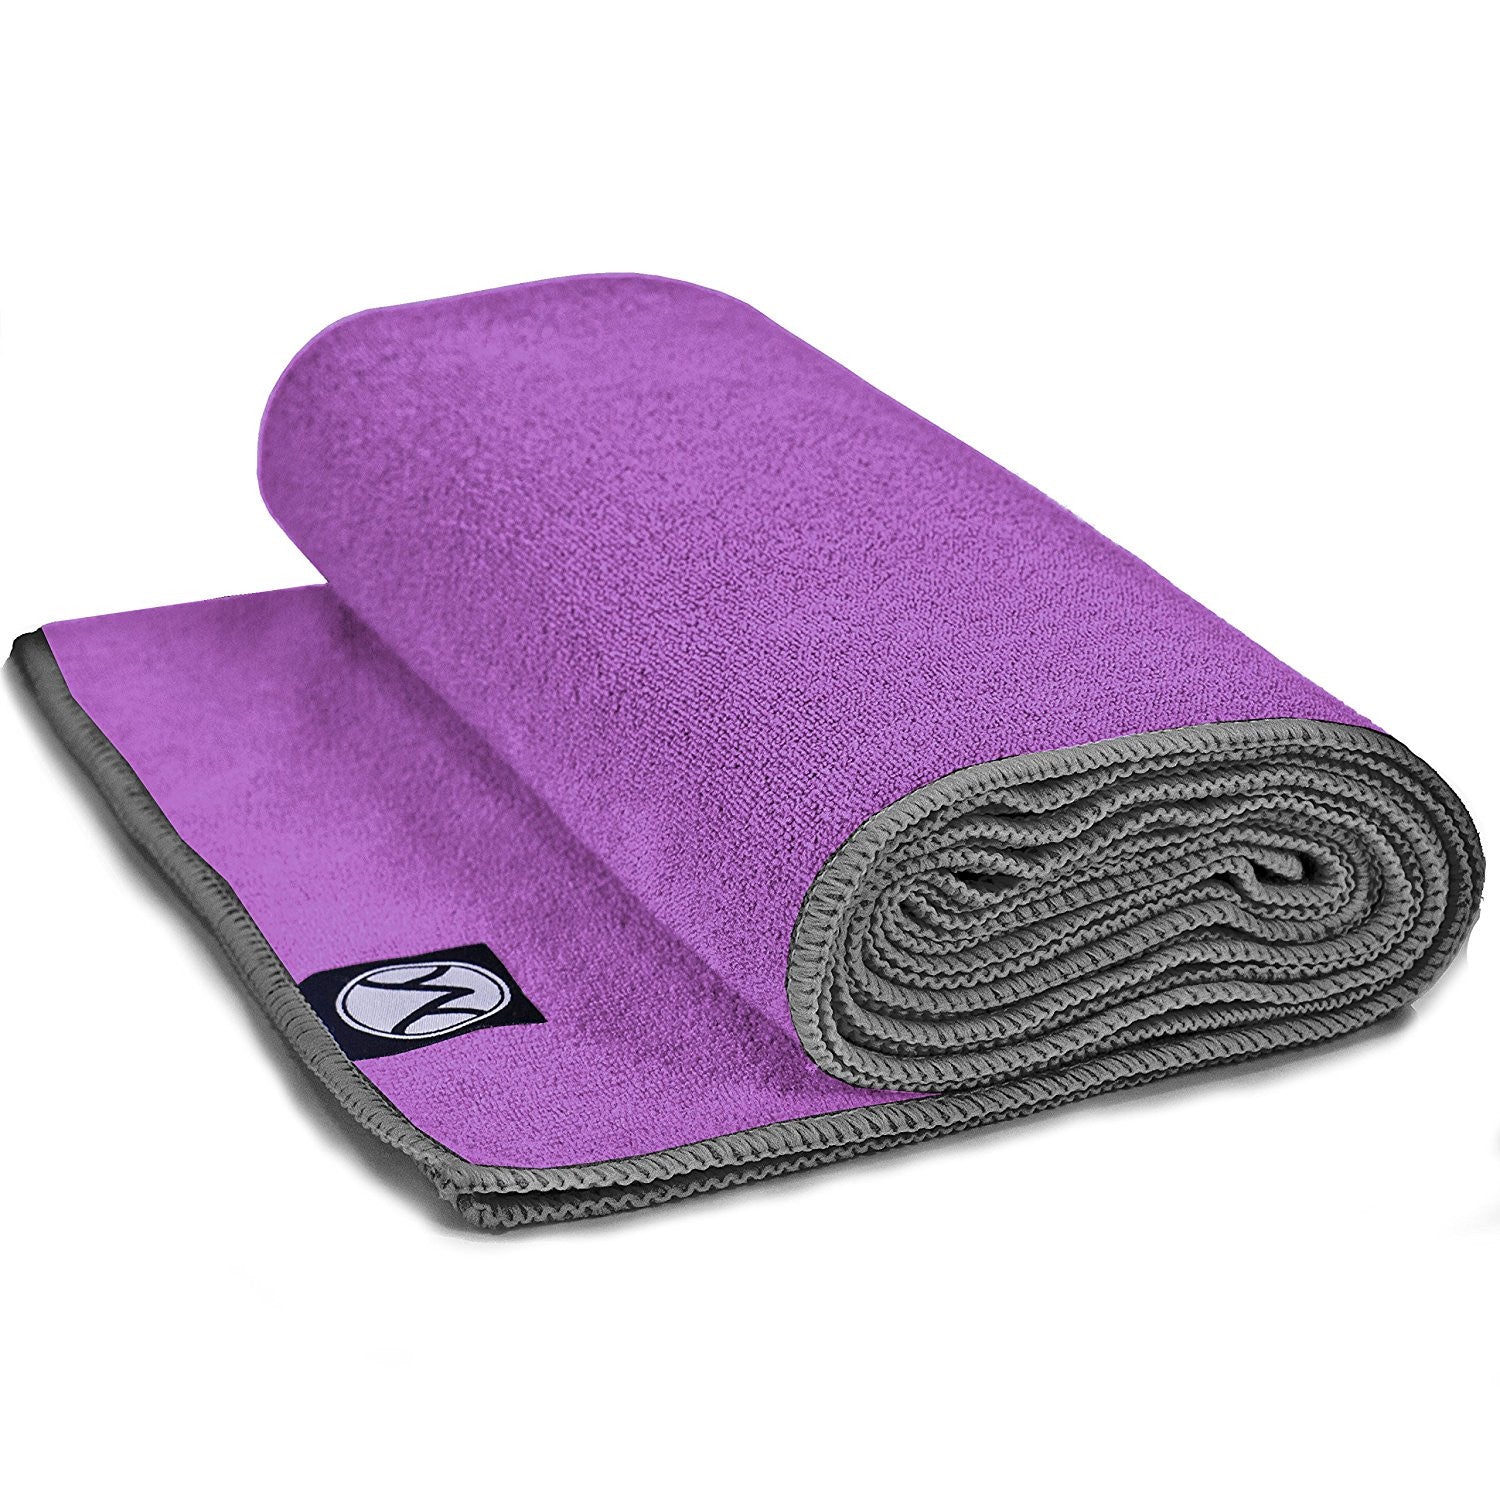 Yoga Mat Versus Yoga Towel